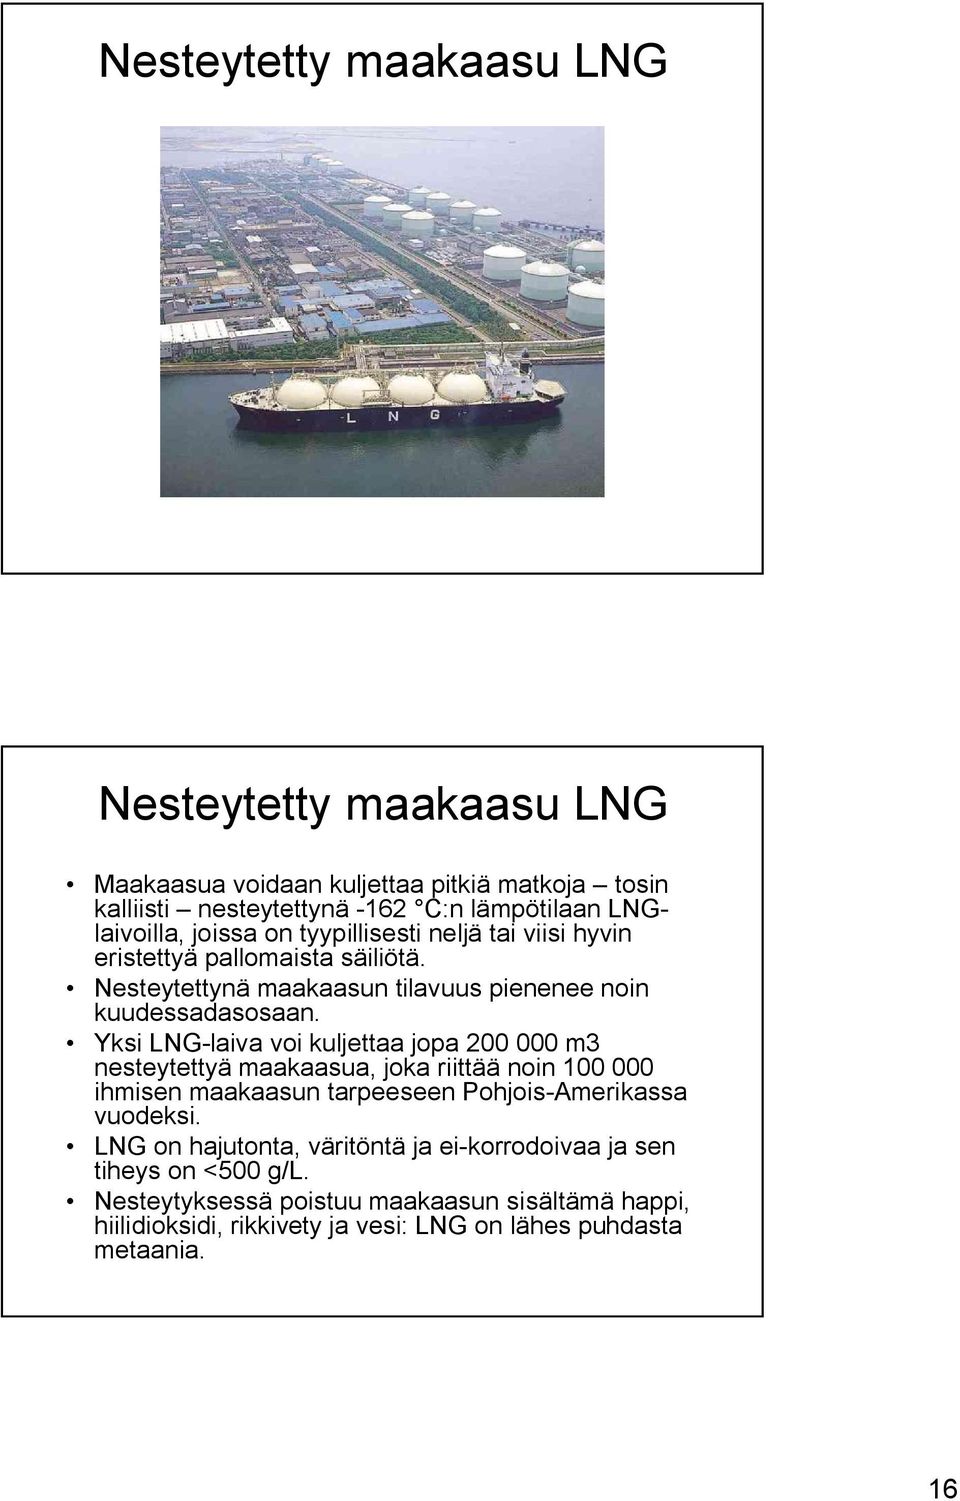 Yksi LNG-laiva voi kuljettaa jopa 200 000 m3 nesteytettyä maakaasua, joka riittää noin 100 000 ihmisen maakaasun tarpeeseen Pohjois-Amerikassa vuodeksi.